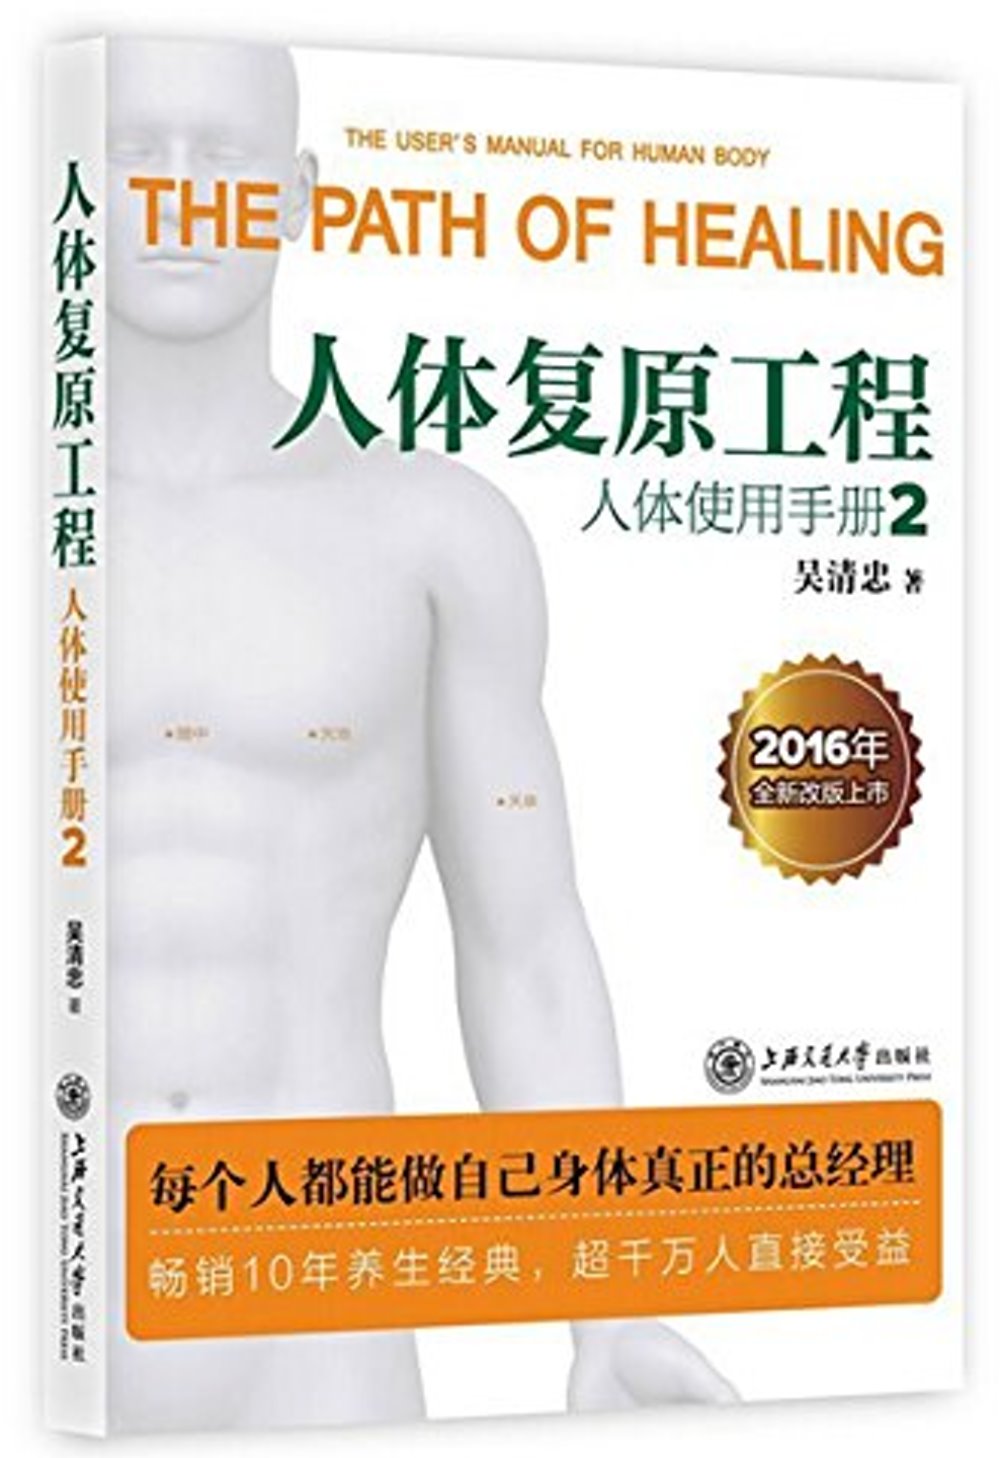 人體復原工程：人體使用手冊2（2016年全新改版上市）